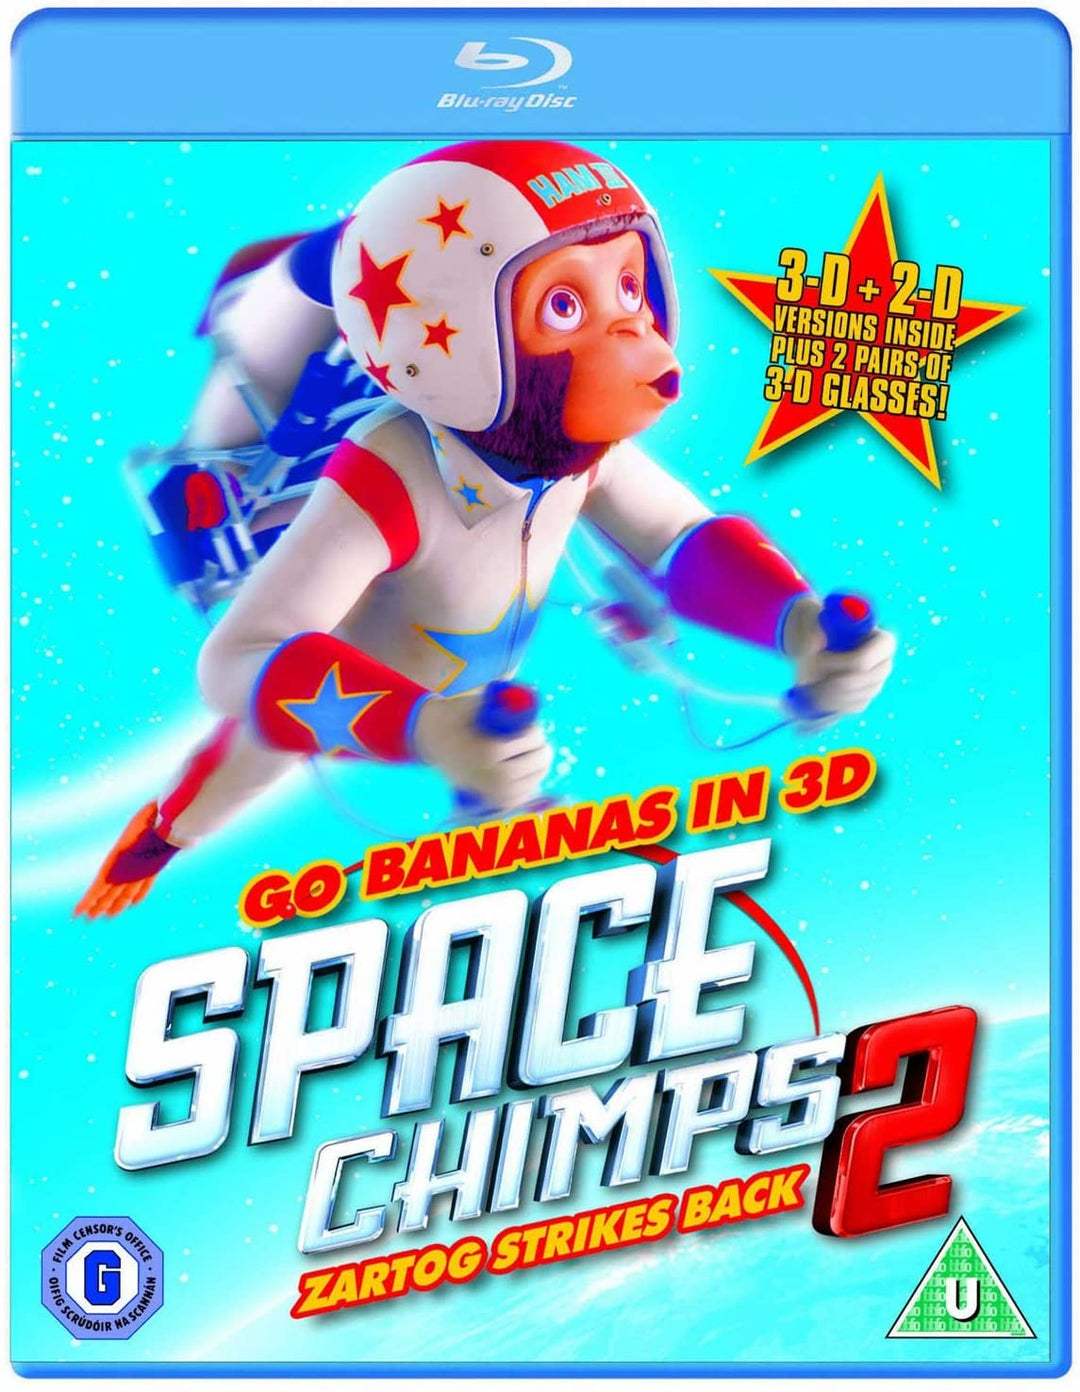 Space Chimps 2 - Zartog slaat terug [Blu-ray]